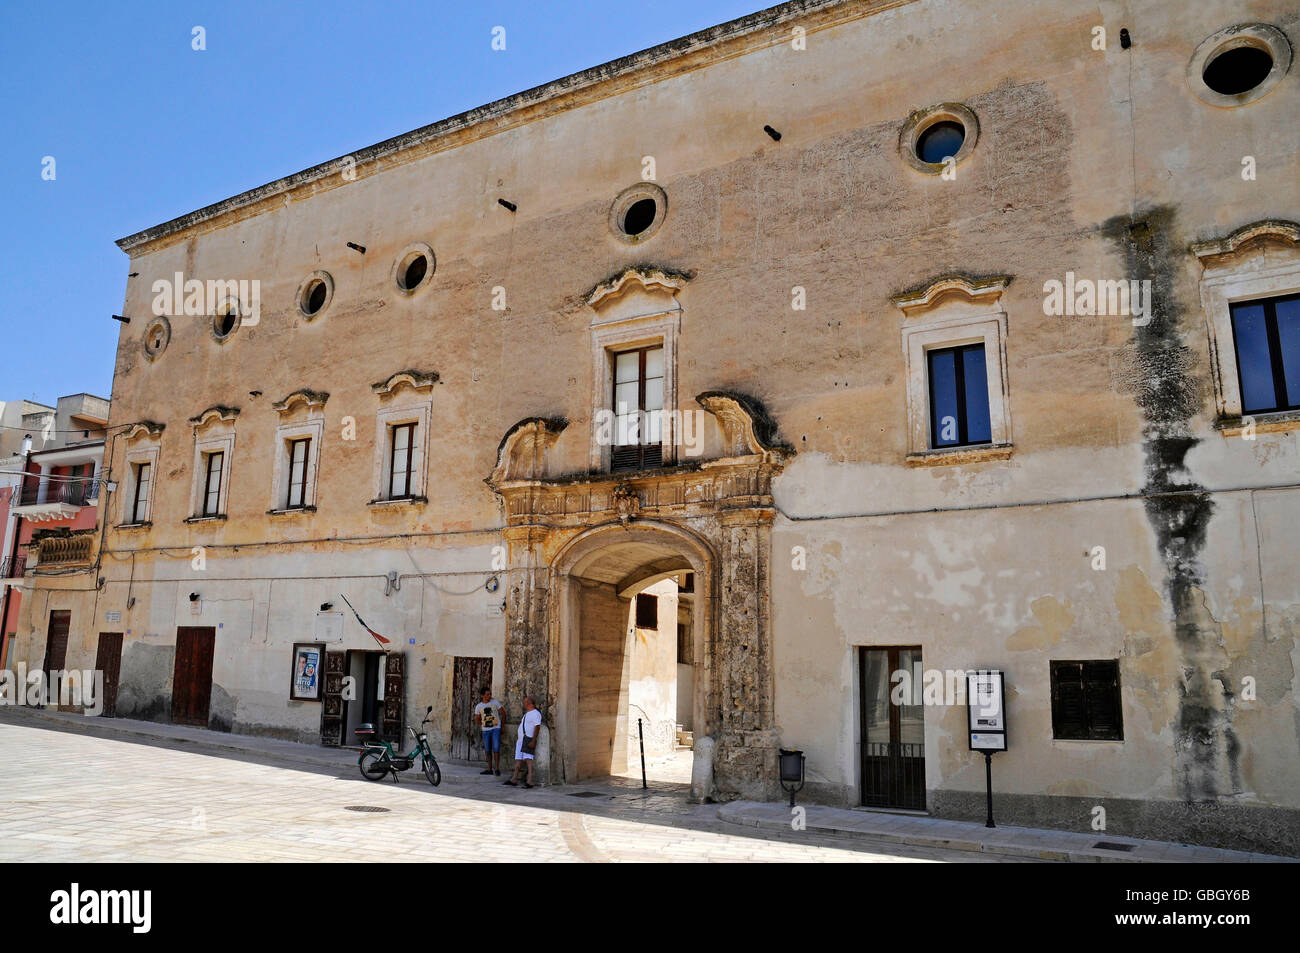 Palazzo Marchesale, palace, Piazza 4 Novembre, square, Montemesola, Tarent Province, Taranto, Puglia, Italy Stock Photo